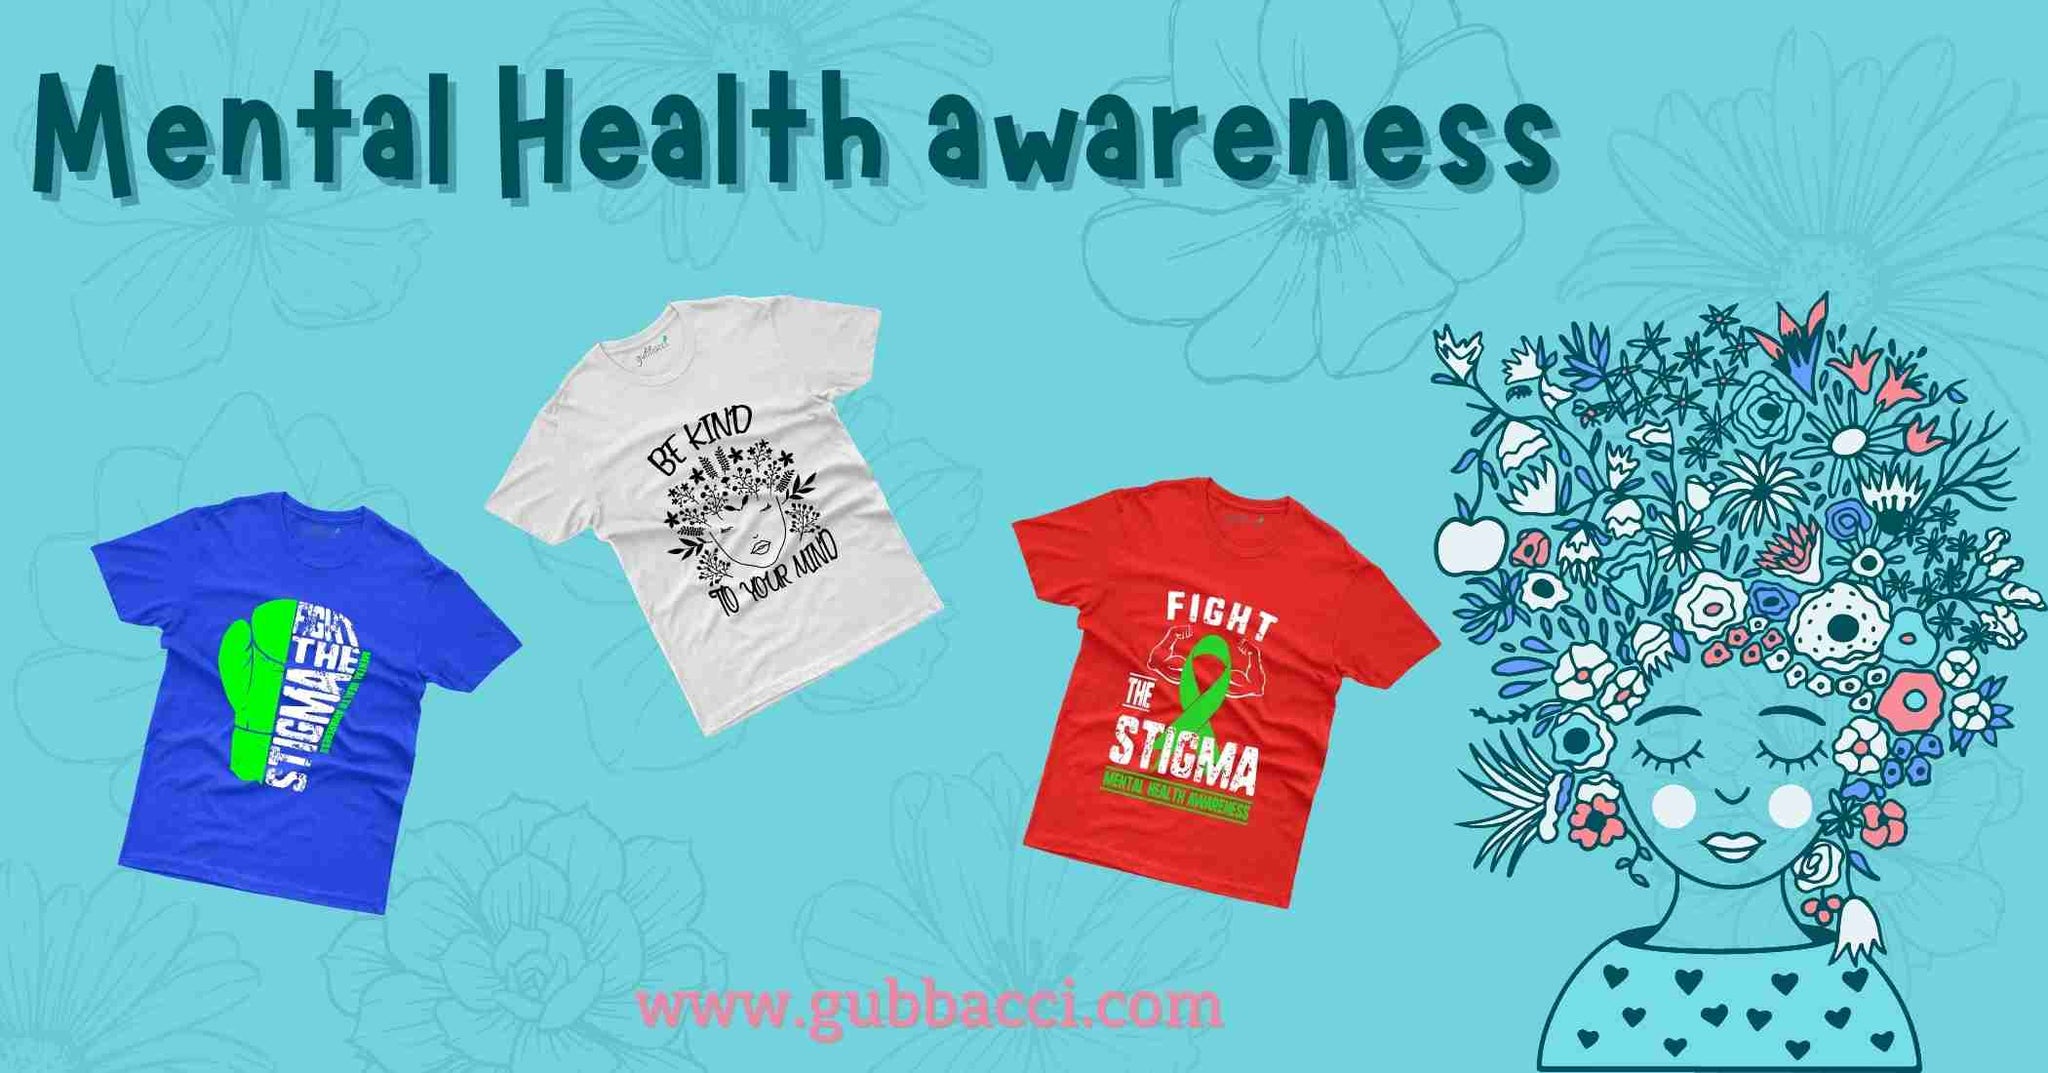 Mental Health awareness T-shirt